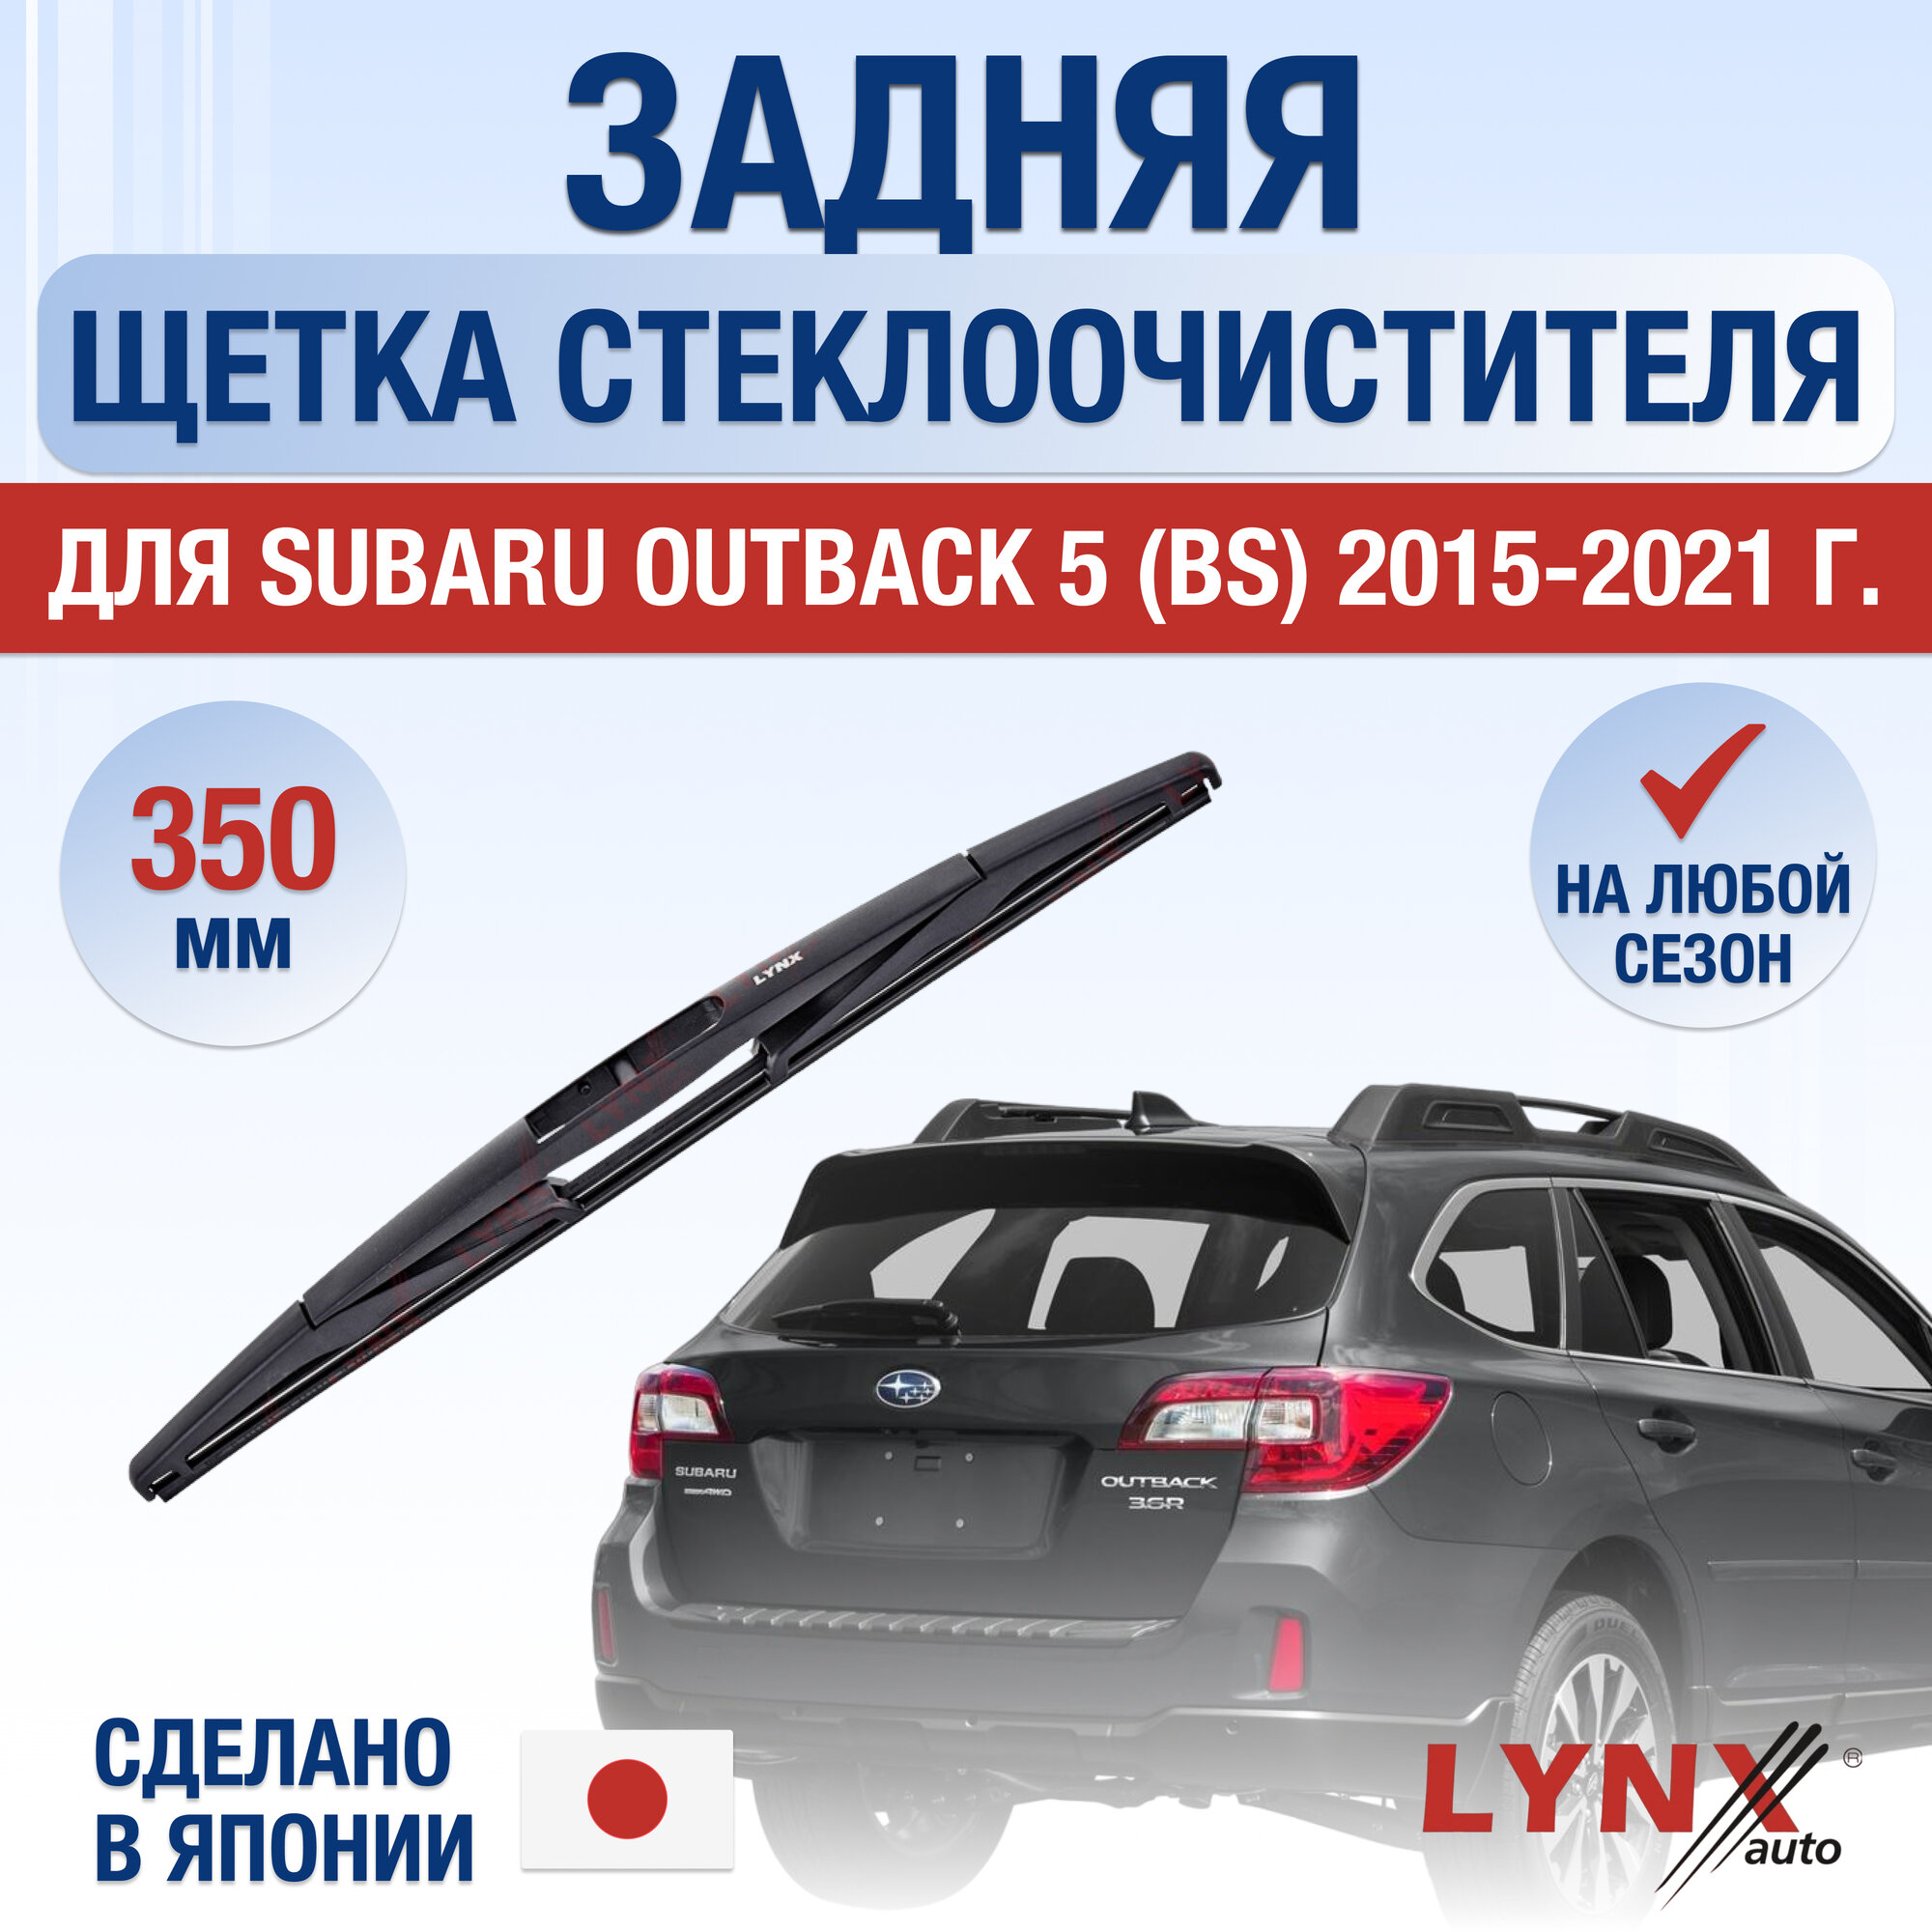 Задняя щетка стеклоочистителя для Subaru Outback (5) BS / 2015 2016 2017 2018 2019 2020 2021 / Задний дворник 350 мм Субару Аутбек